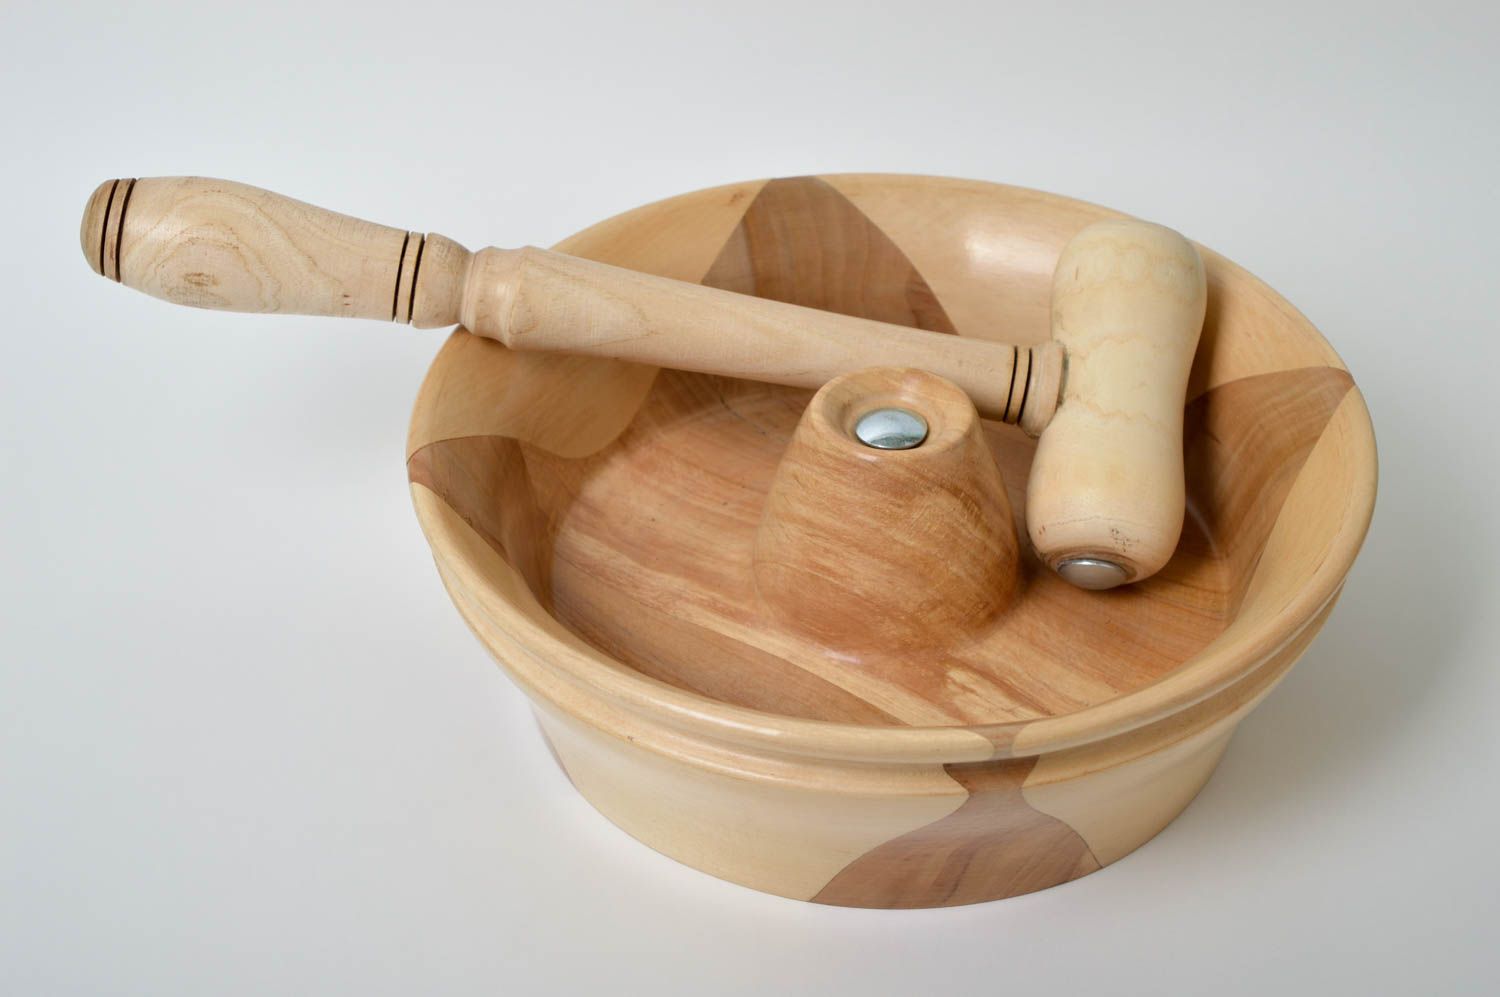 Unusual handmade wooden nutcracker tool kitchen goods kitchen supplies  photo 2